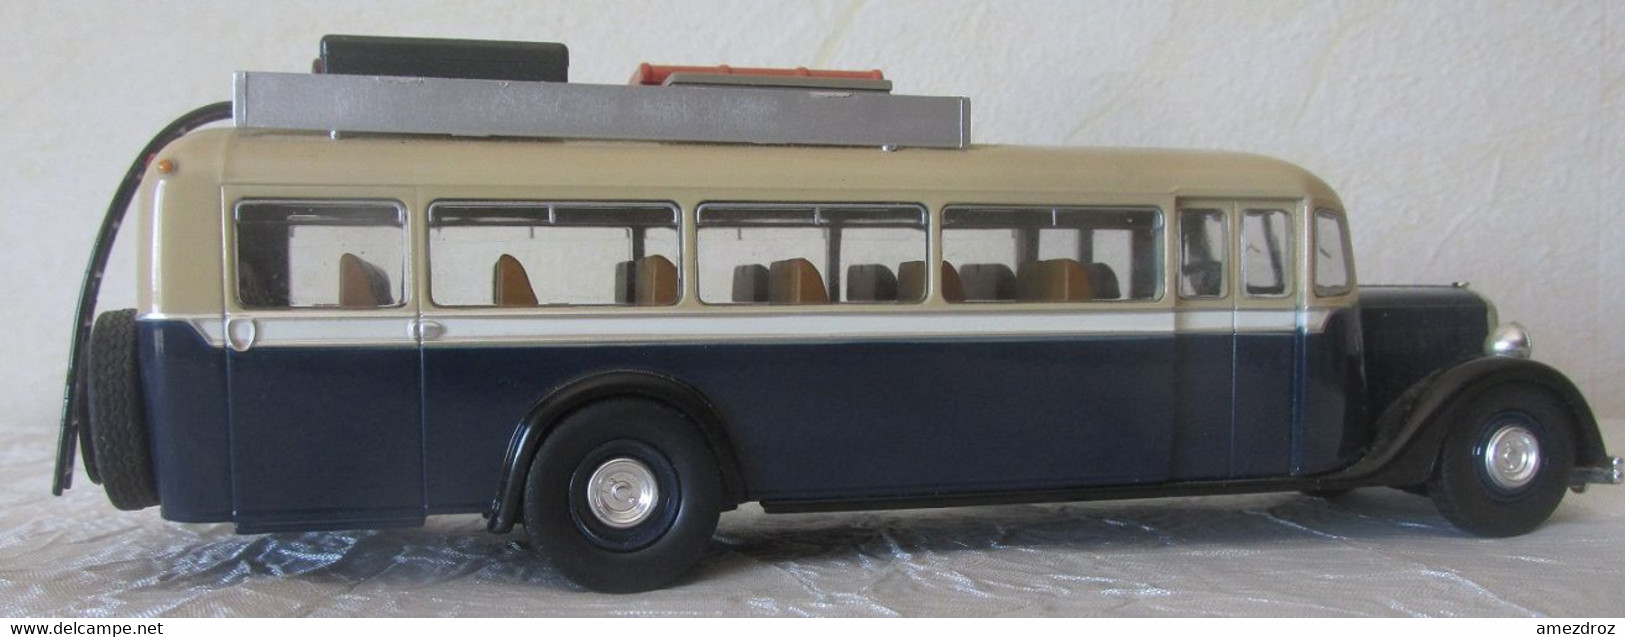 Bus- Citroën T 45 - 1934 - échelle 1/43  Métal - Voir Photos - Utilitaires